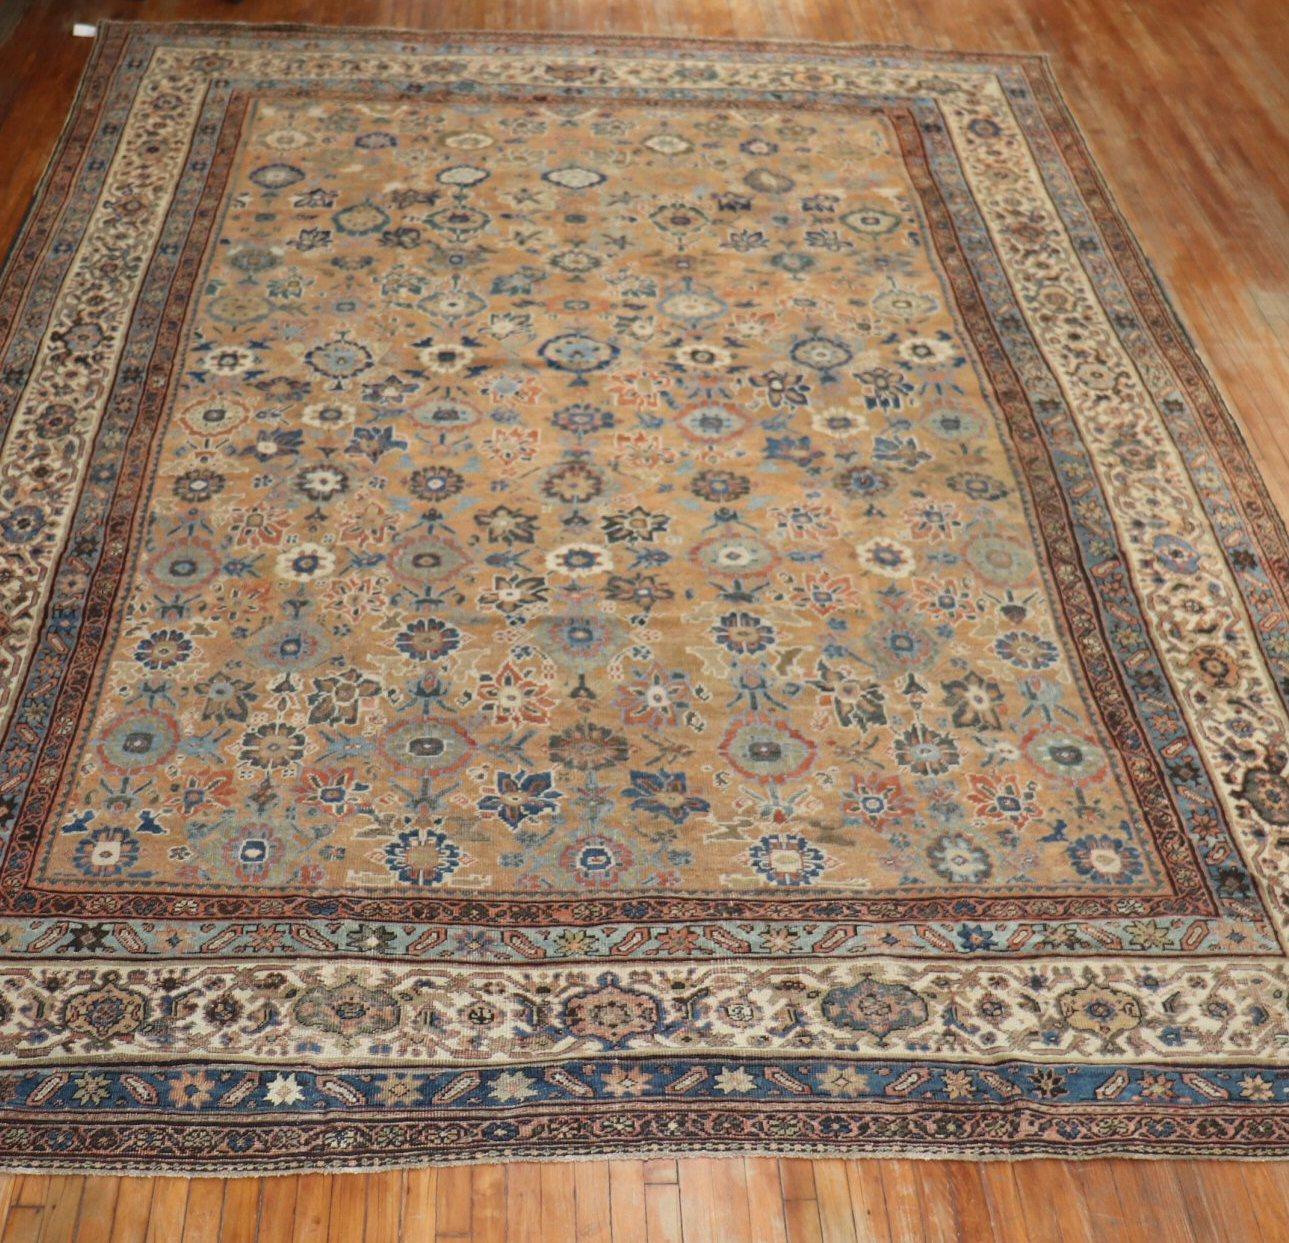 Ein antiker persischer Mahal-Teppich aus dem frühen 20. Jahrhundert in Rost- und Erdtönen.

Maße: 11'6'' x 16'6''.